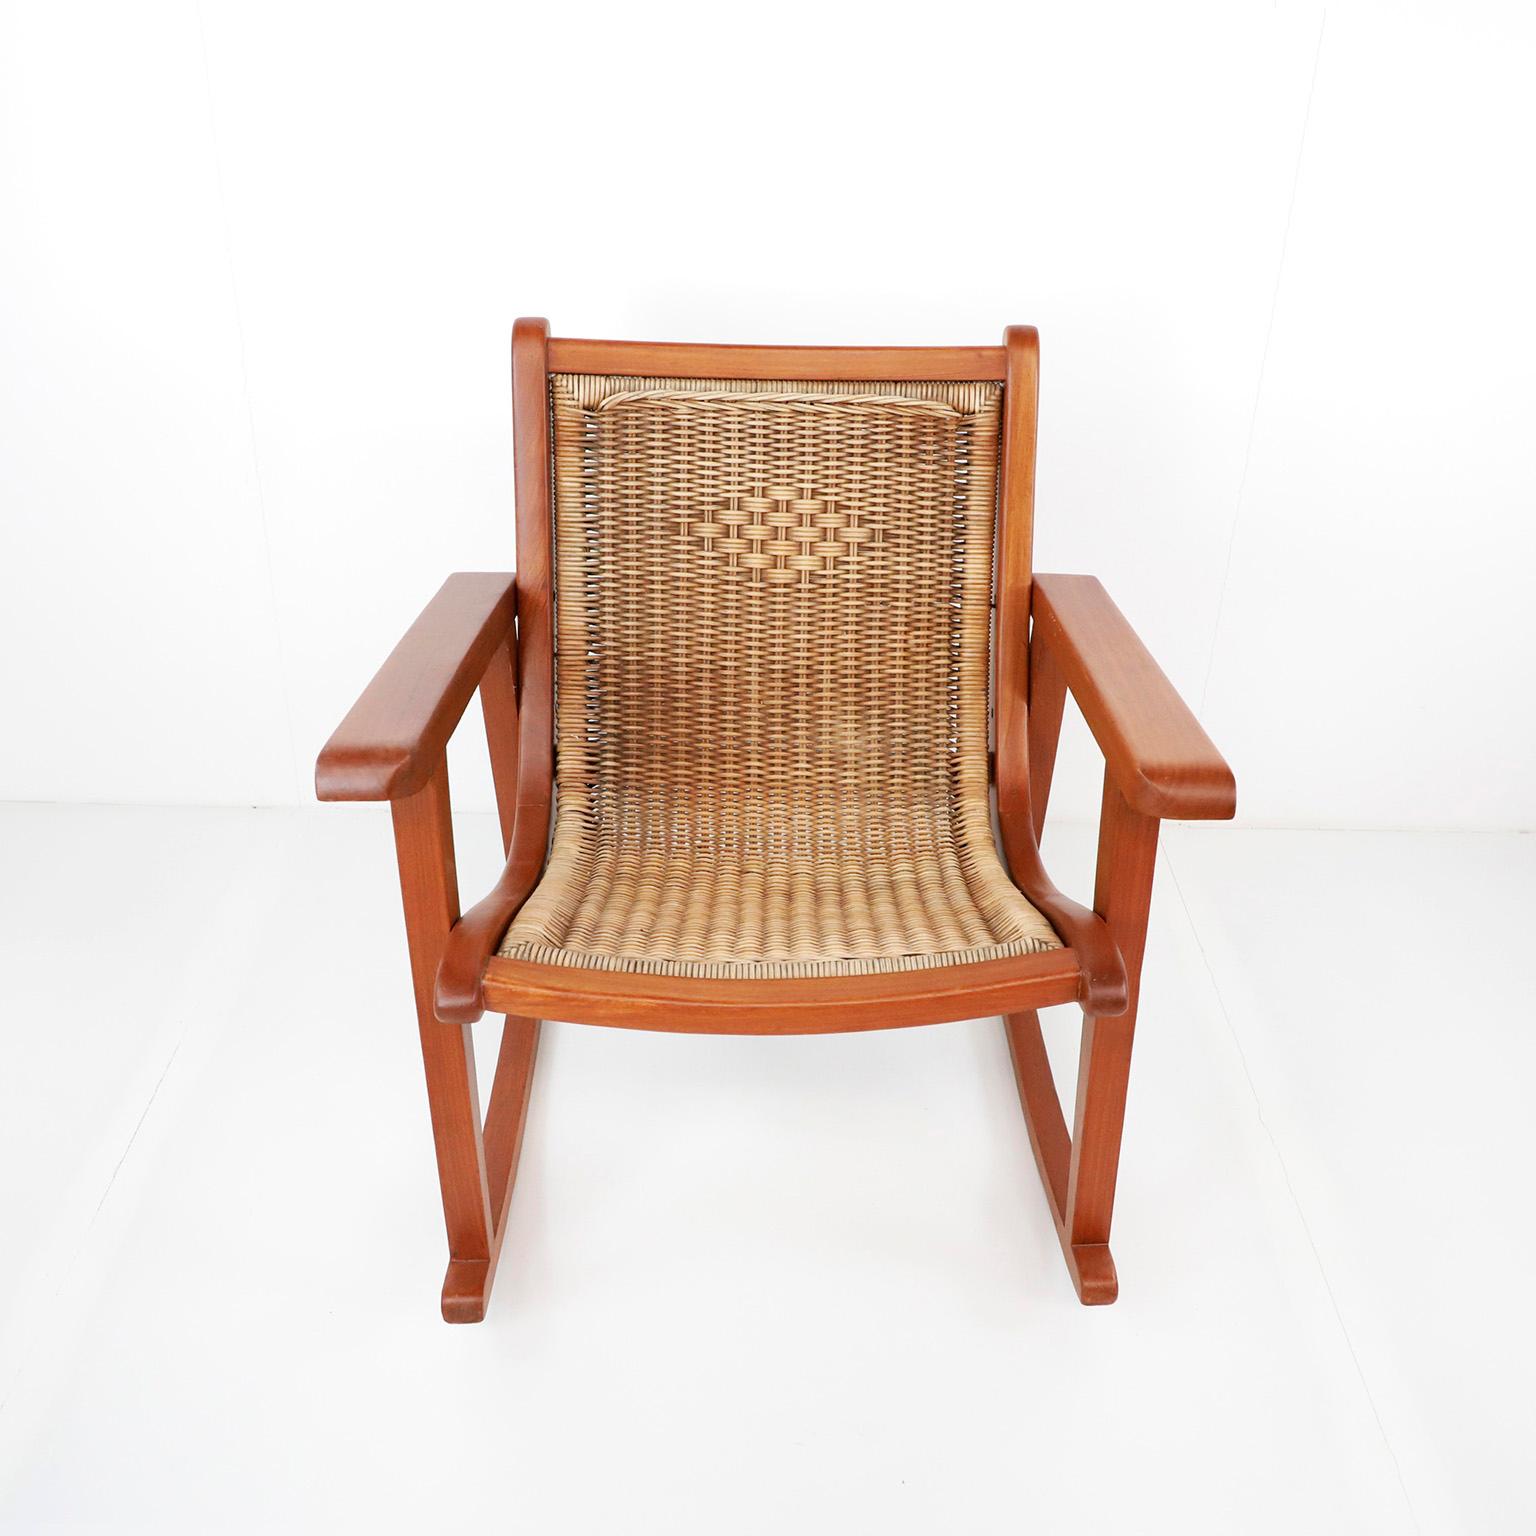 Ciraca 1950, nous vous proposons cette chaise à bascule mexicaine attribuée à Michael van Beuren en bois d'acajou et récemment restaurée par des professionnels.